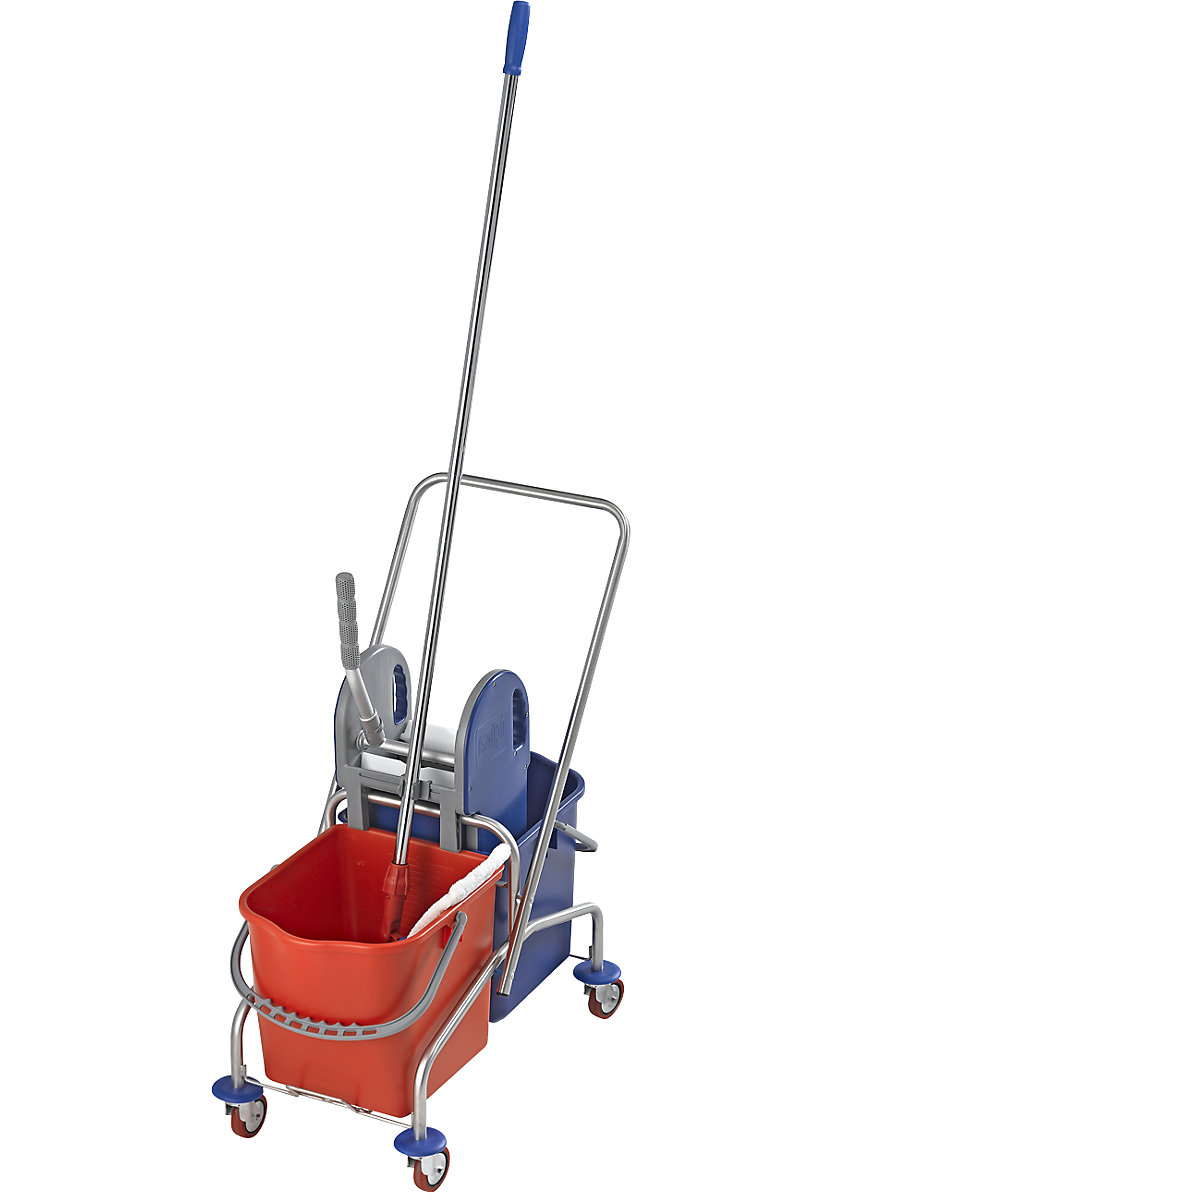 Zestaw z wózkiem do sprzątania ze stali szlachetnej – eurokraft pro (Zdjęcie produktu 2)-1